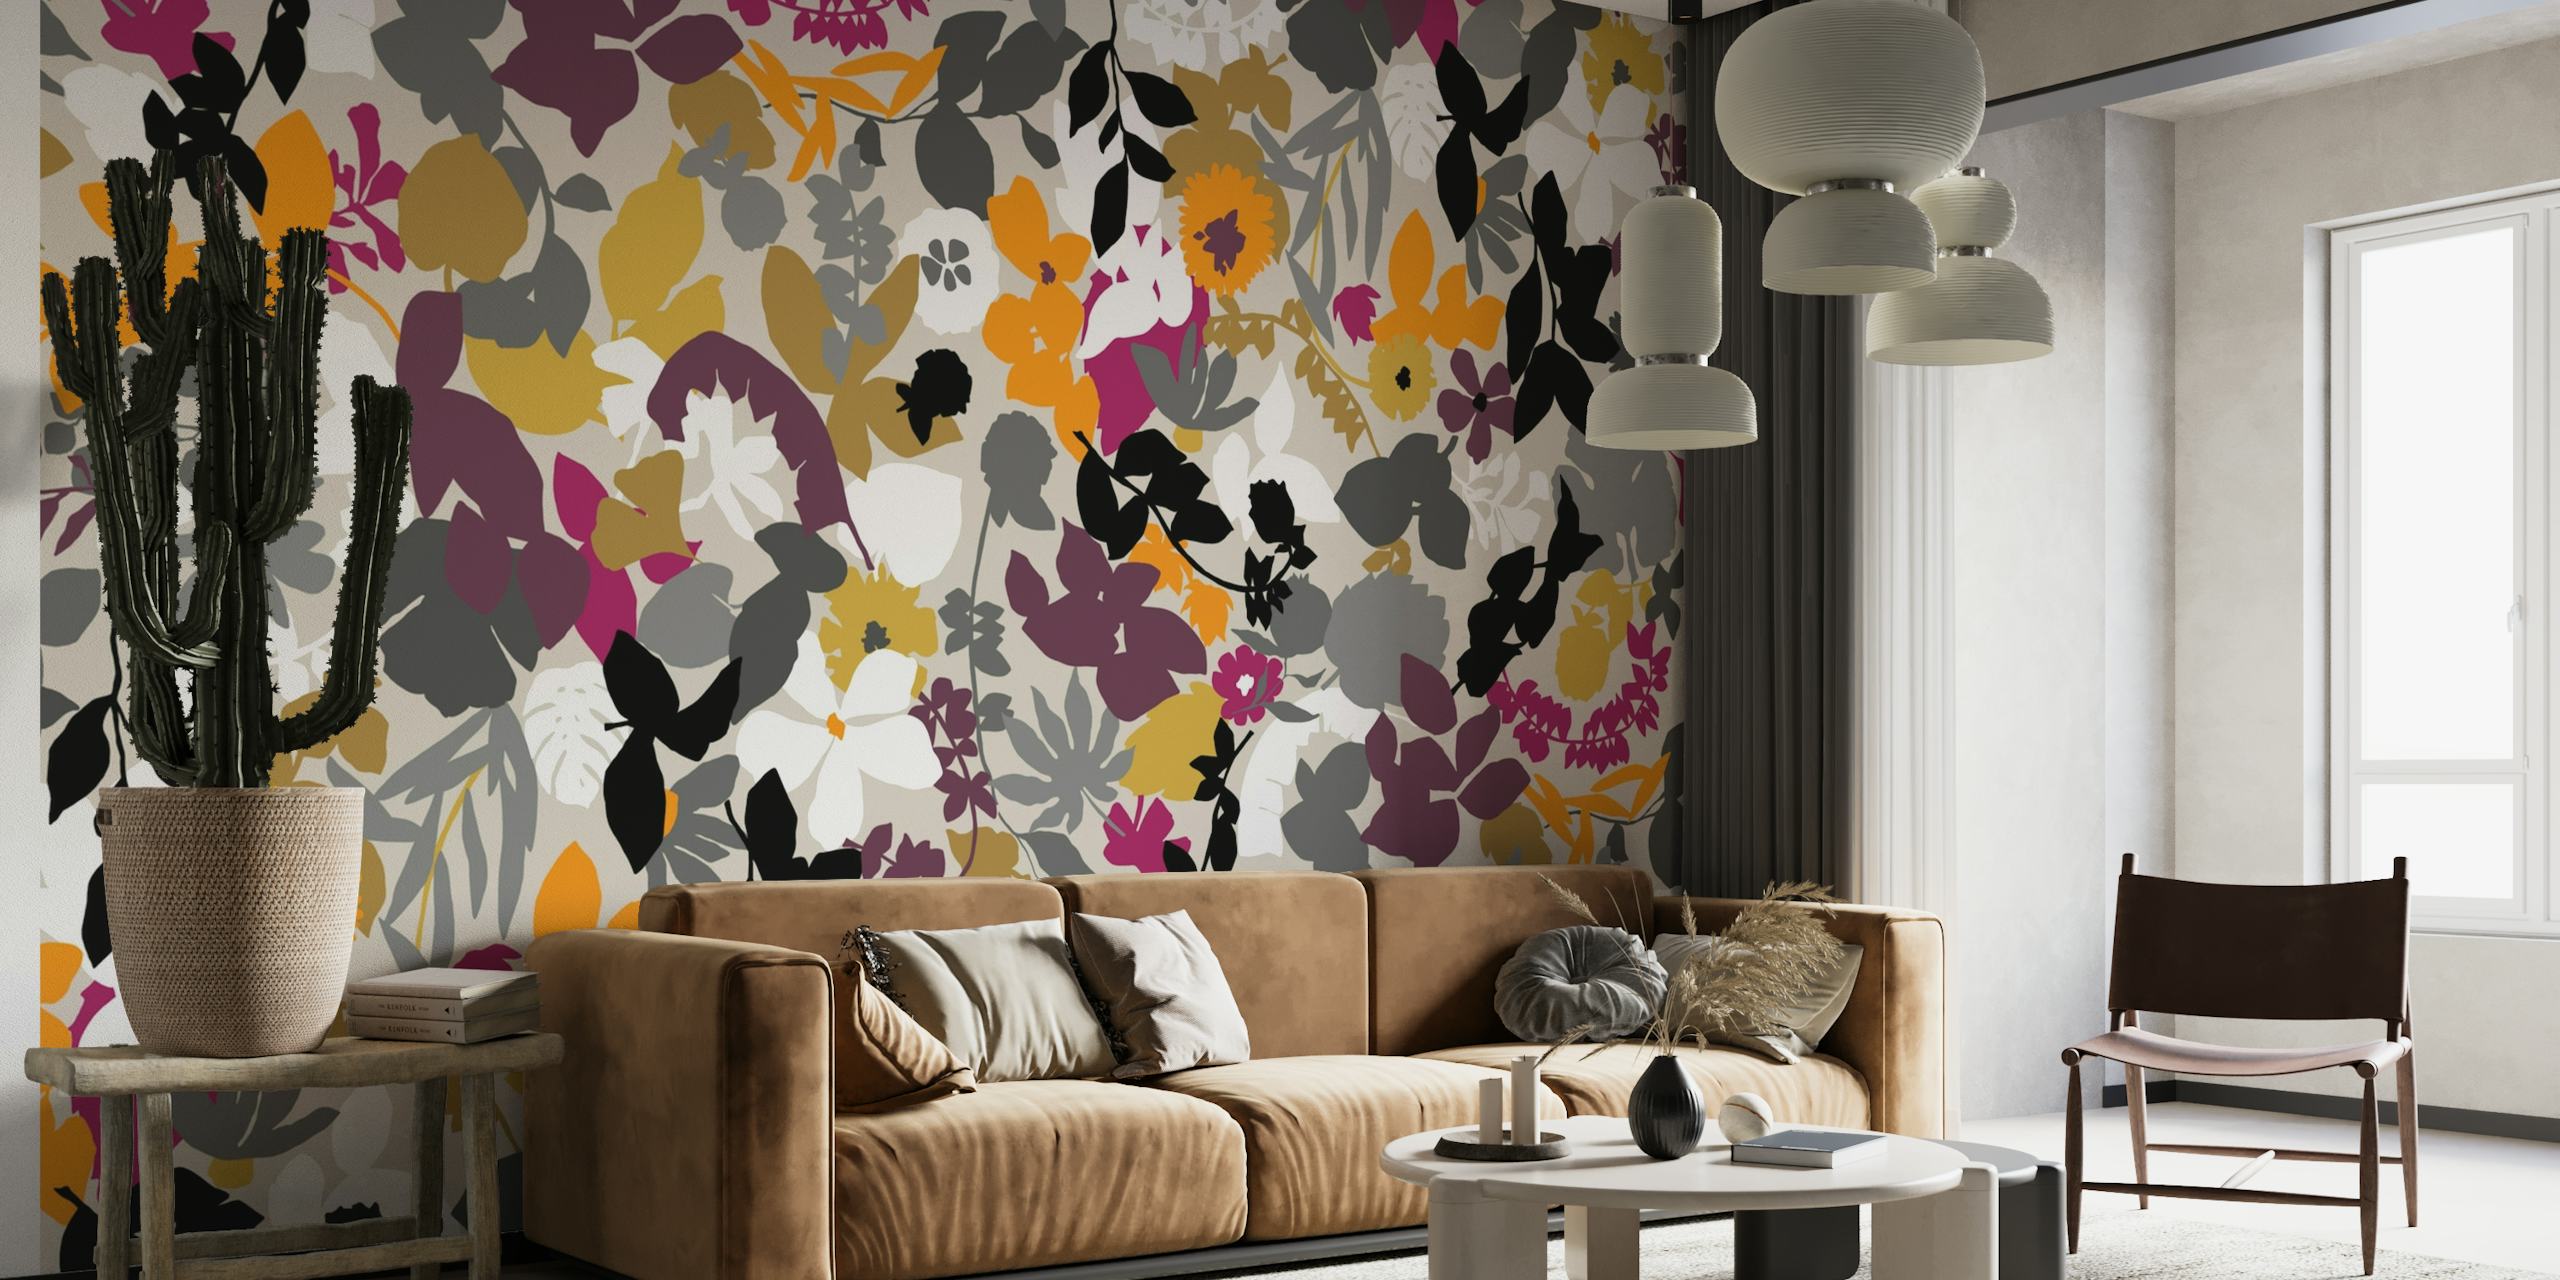 Abstract fotobehang met bladeren in de kleuren mosterd, grijs en paars